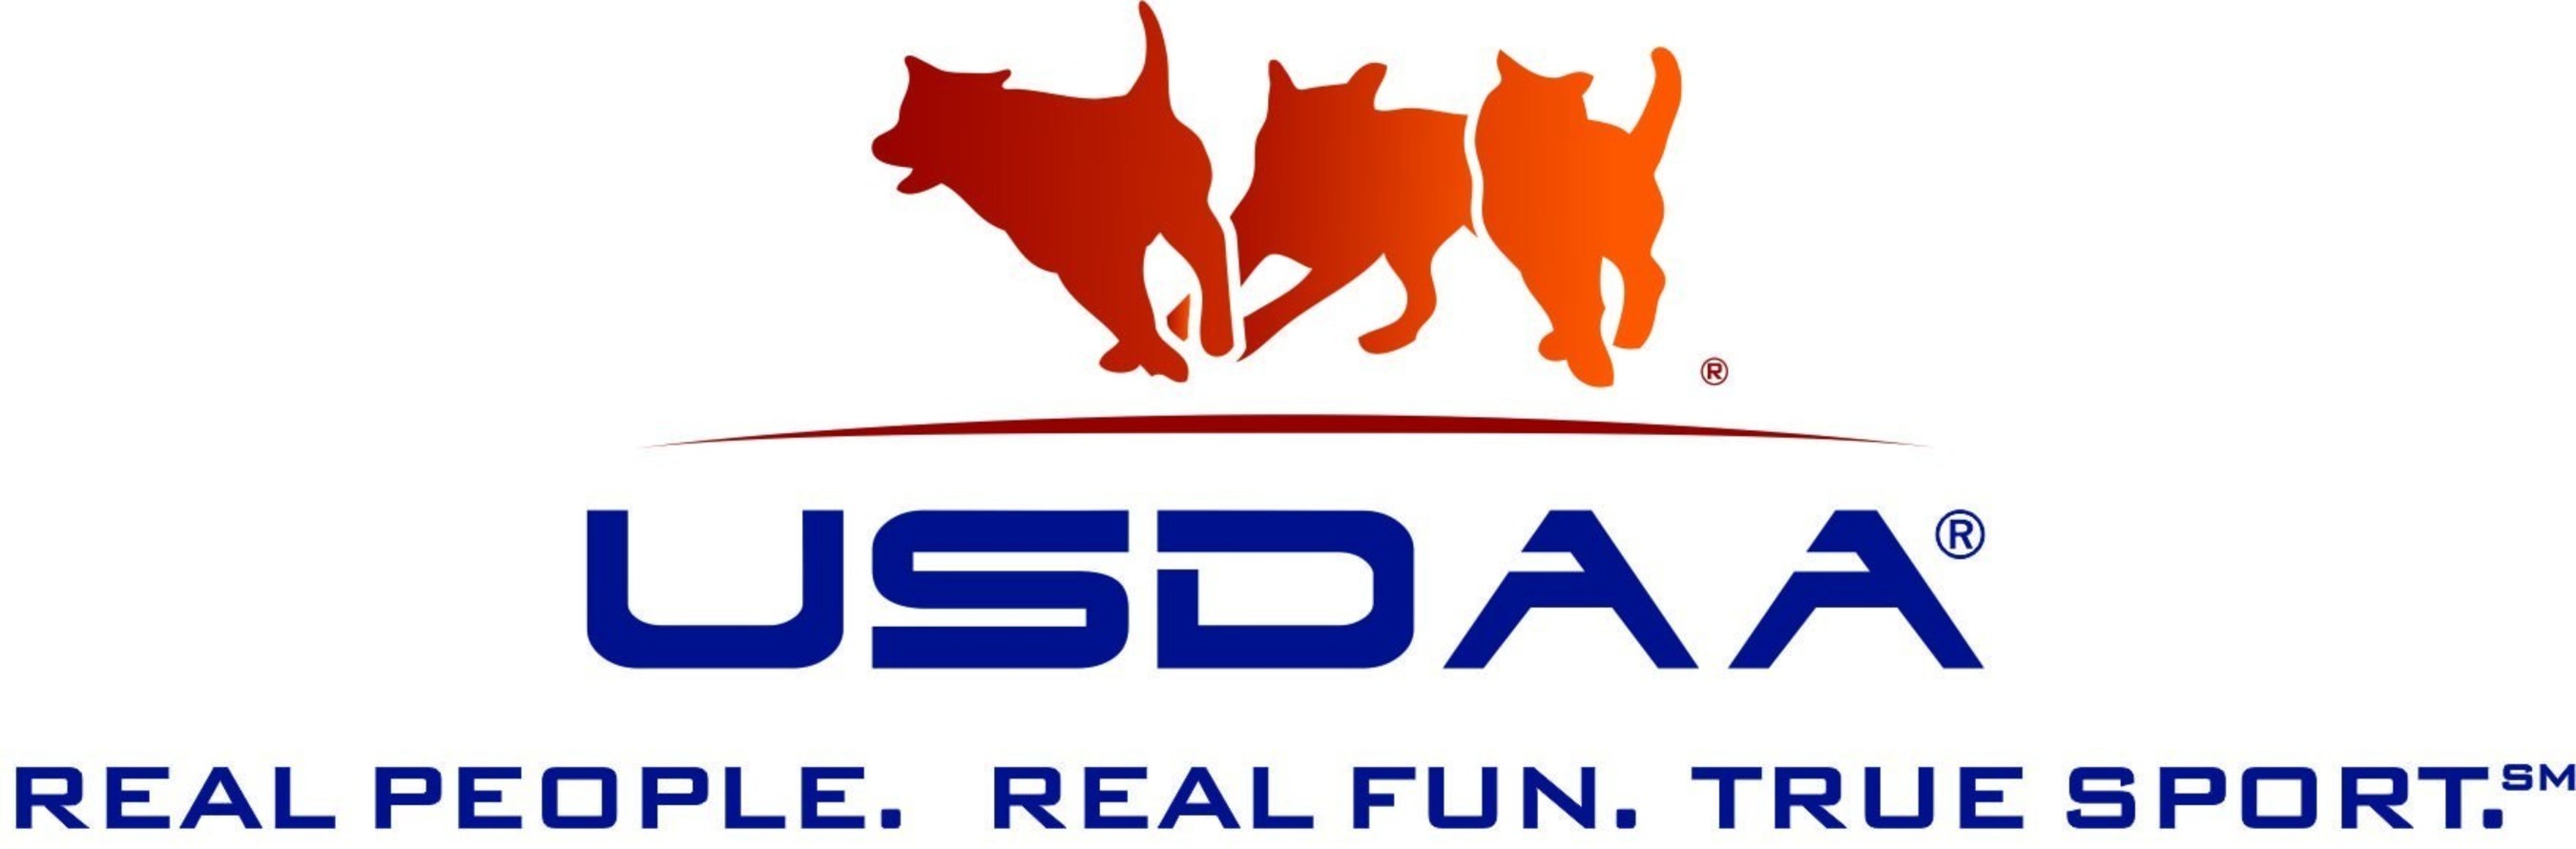 USDAA logo.